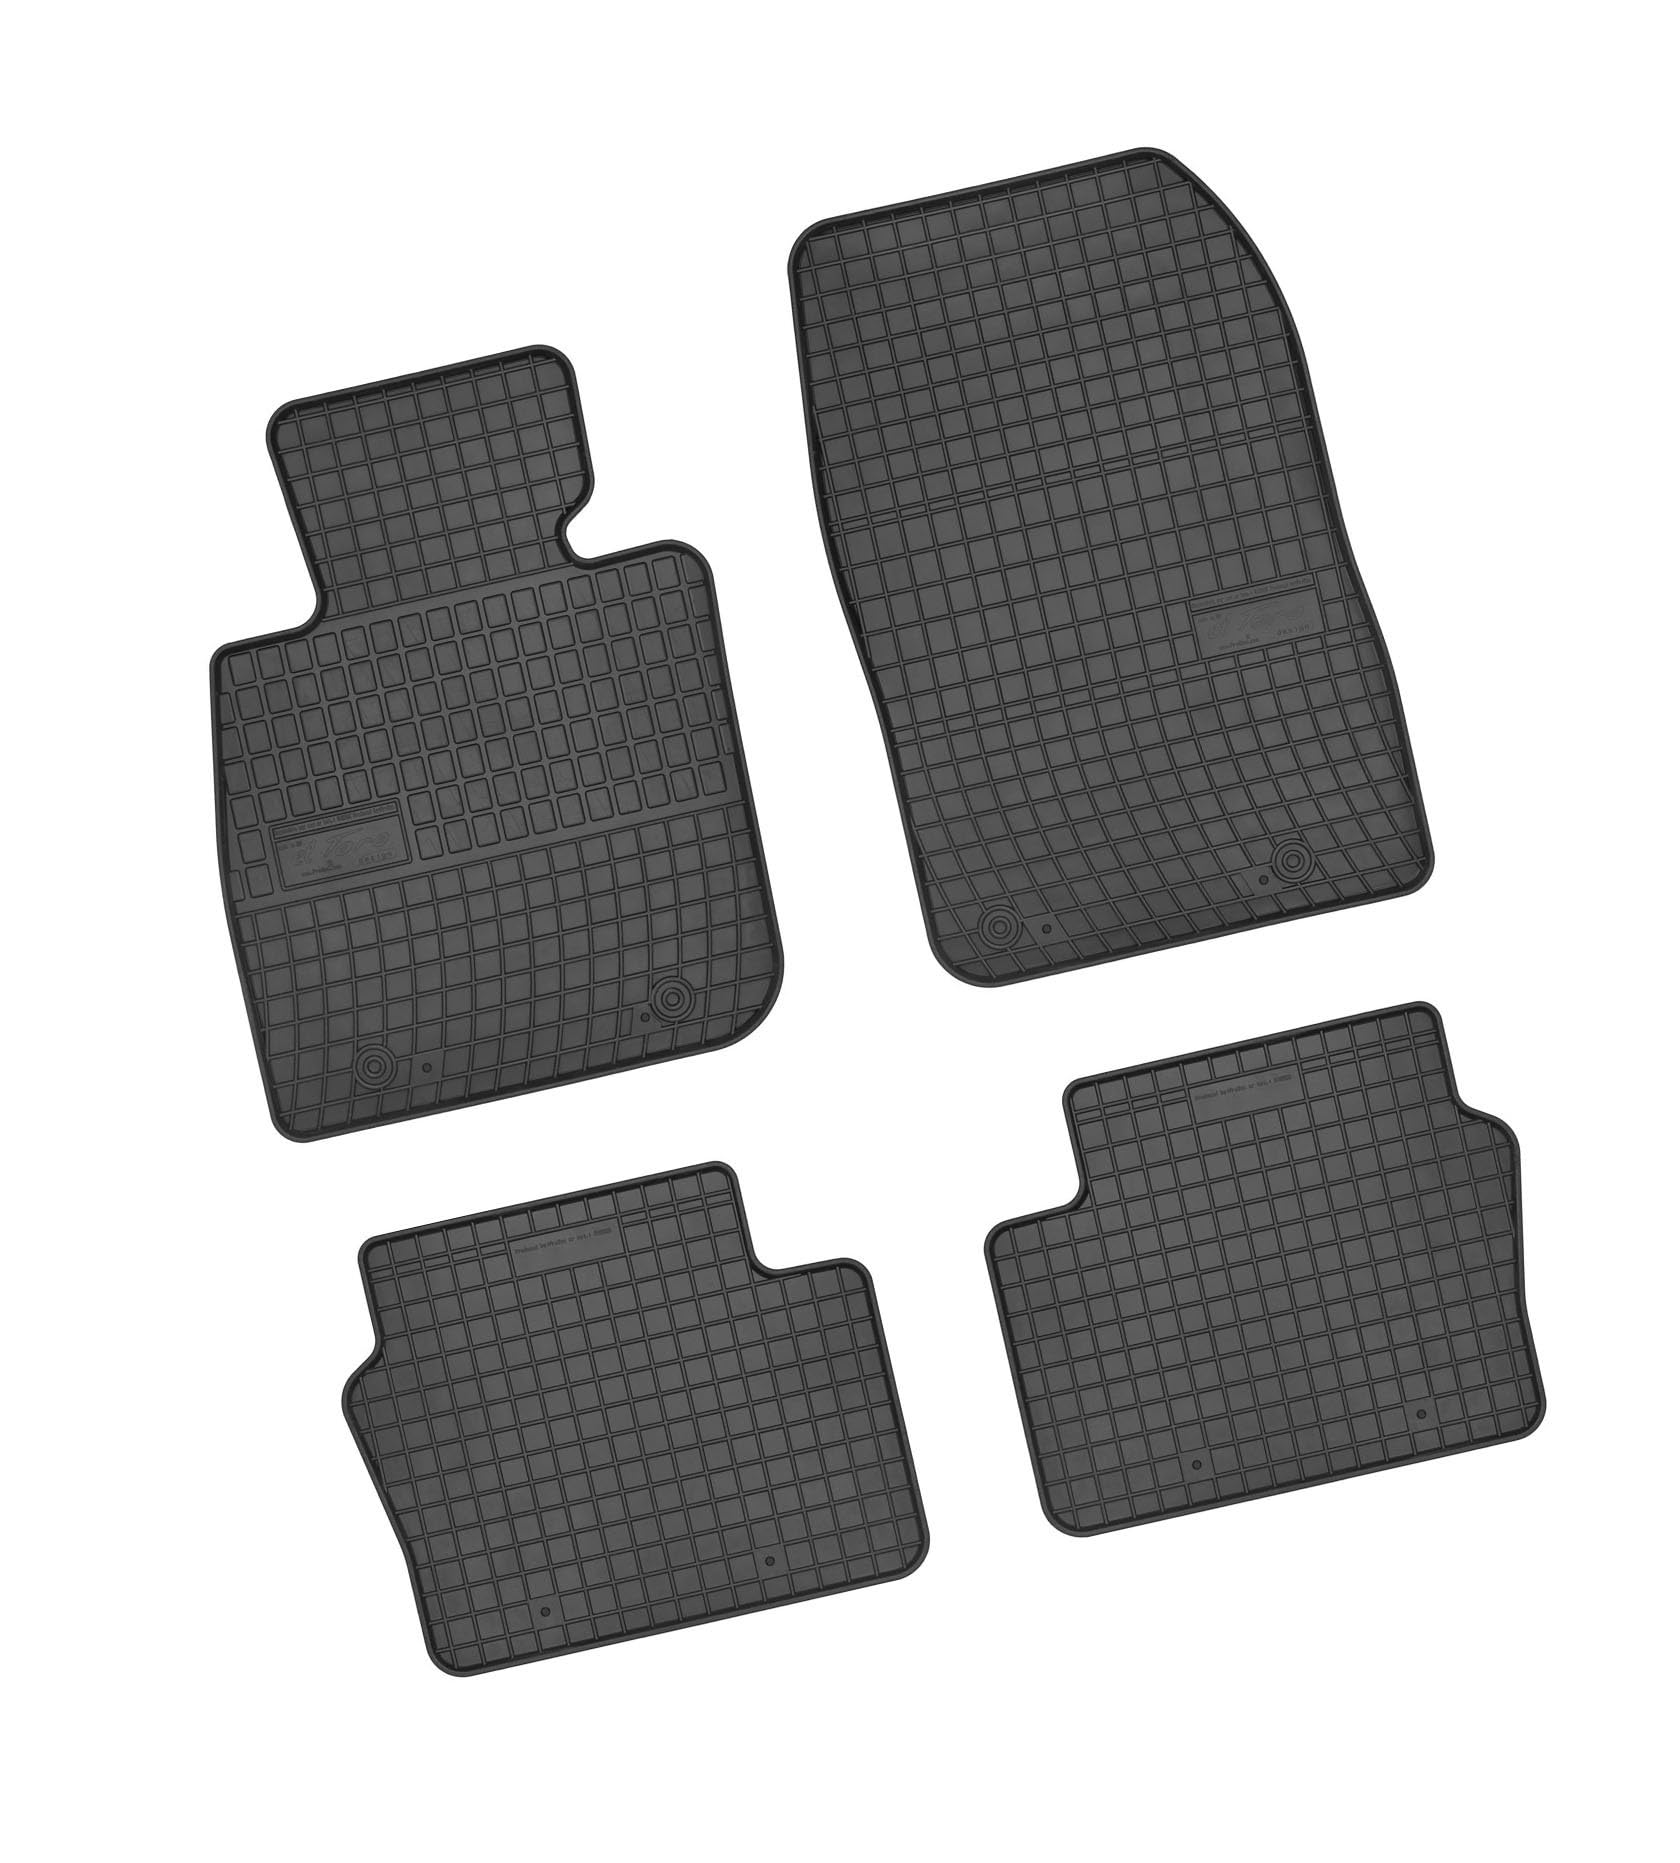 Bär-AfC MA09992 Gummimatten Auto Fußmatten Schwarz, Erhöhter Rand, Set 4-teilig, Passgenau für Mazda CX-3 Baujahr ab 2015 von Bär-AfC